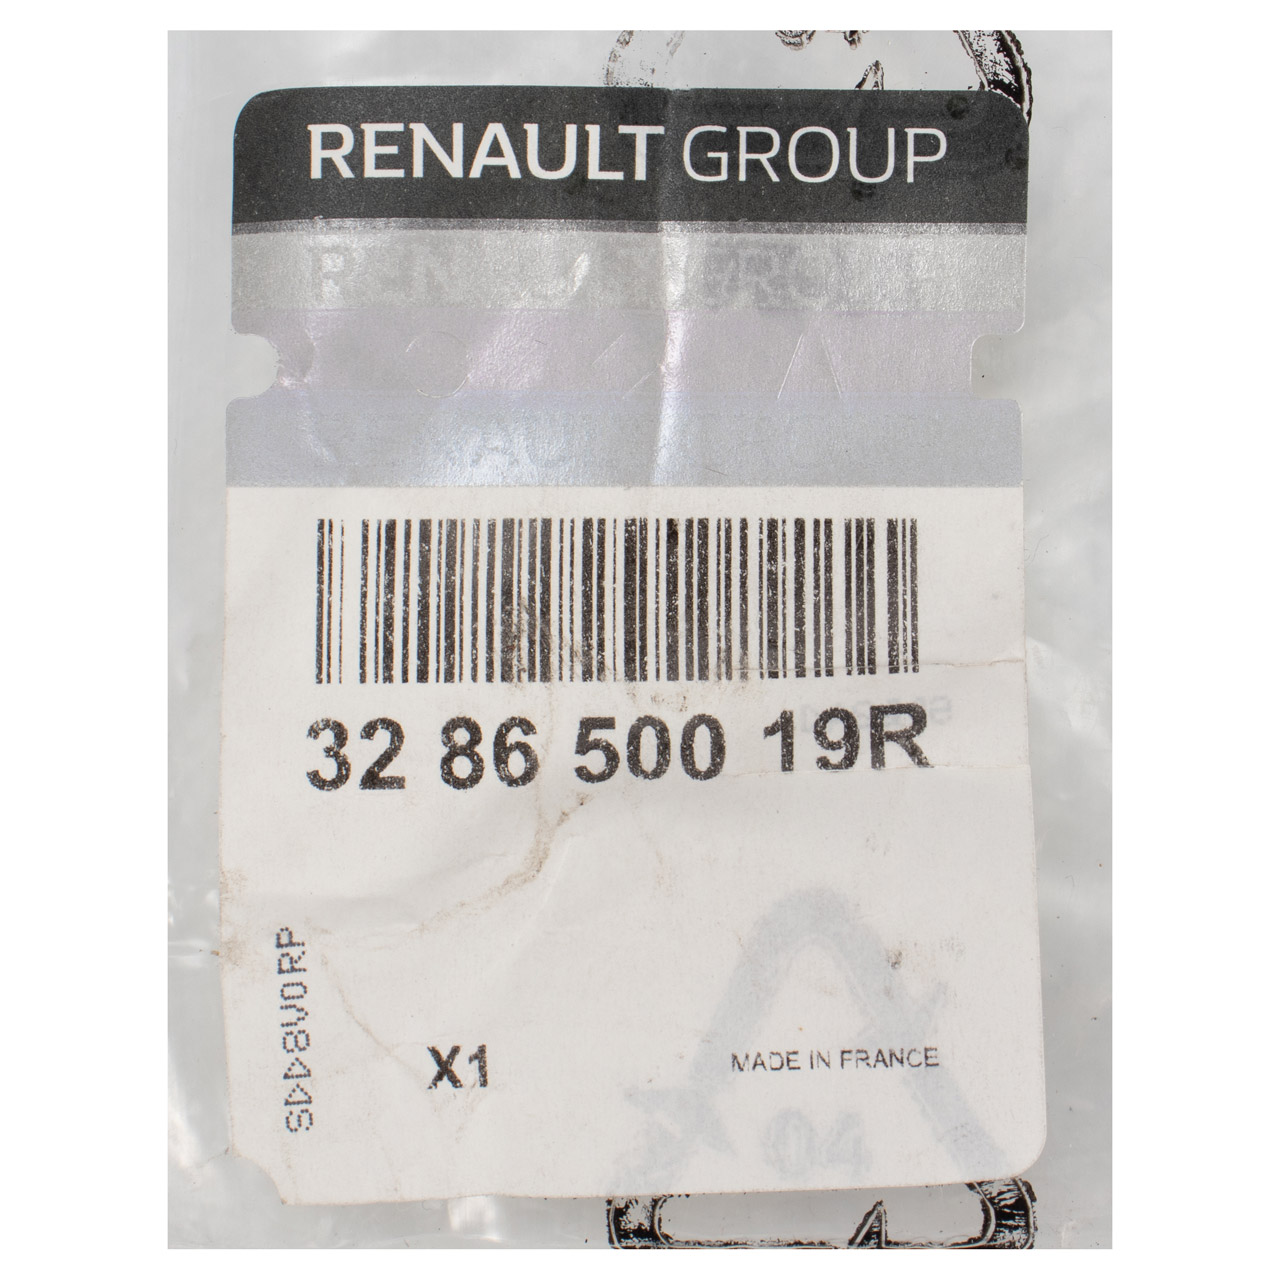 ORIGINAL Renault Schaltknauf Schalthebelknauf 6 Gang Captur 1 Laguna 3 328650019R